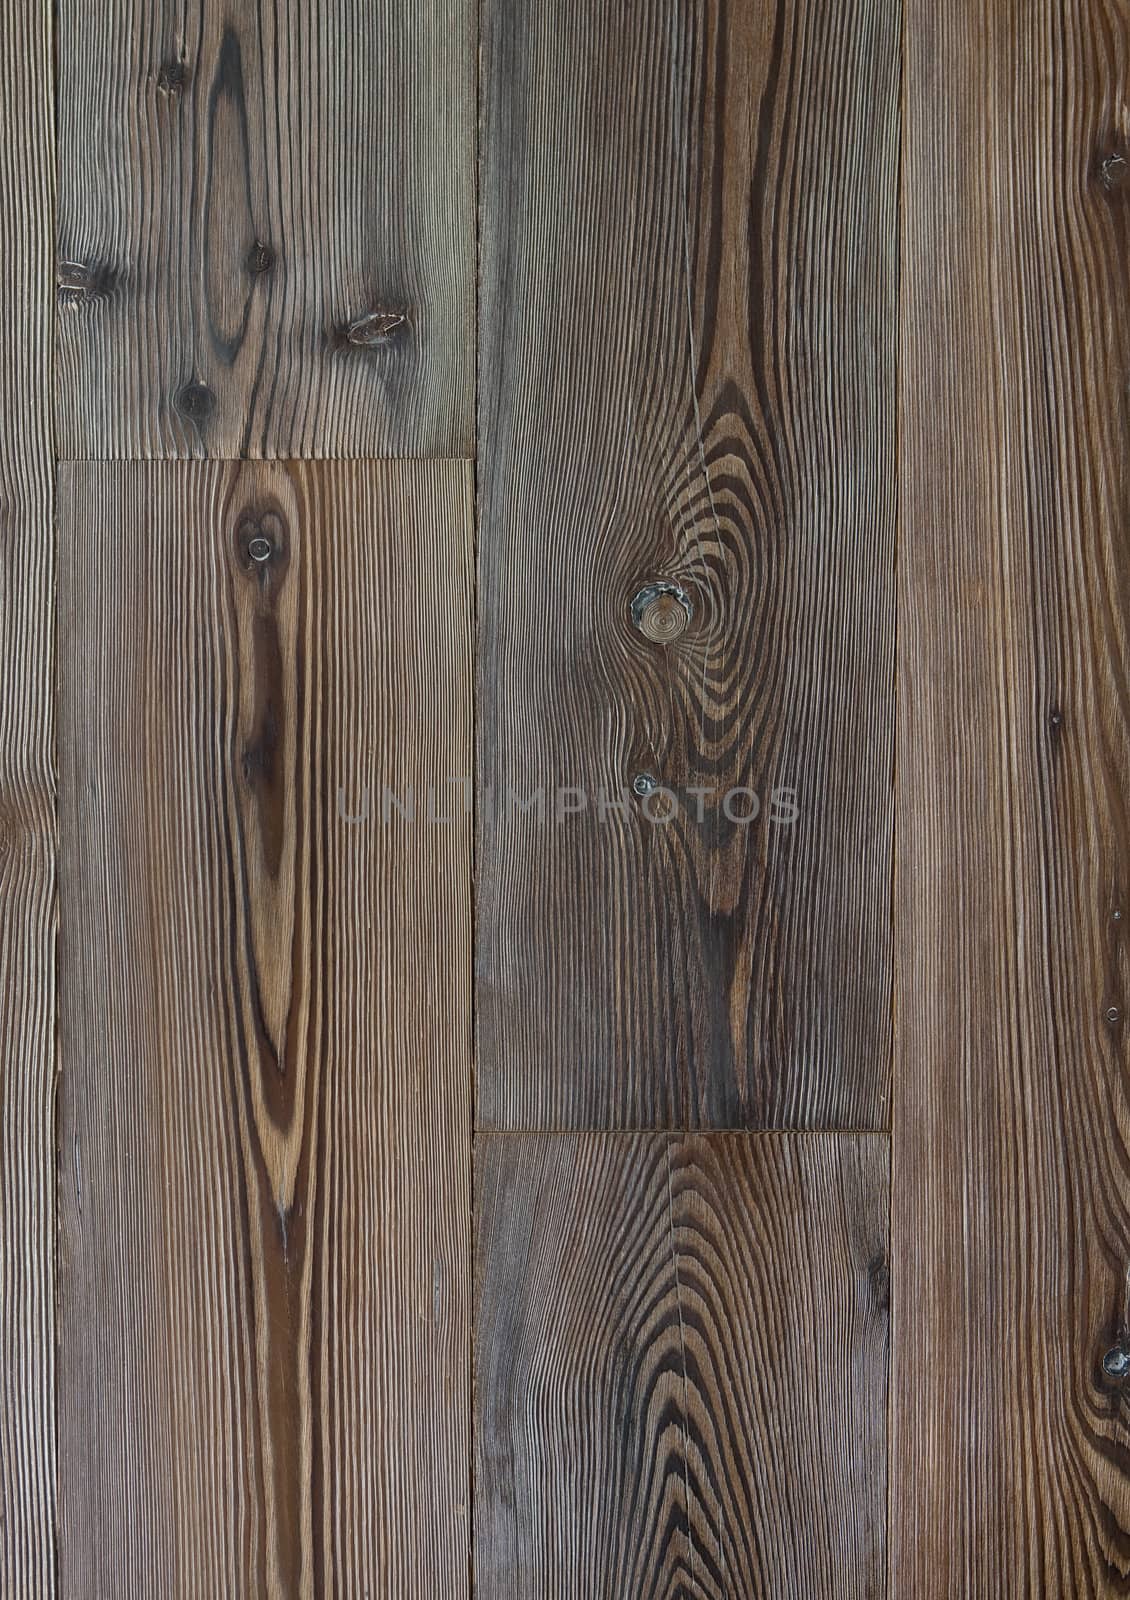 Abstract wooden background. Dark wooden floor.